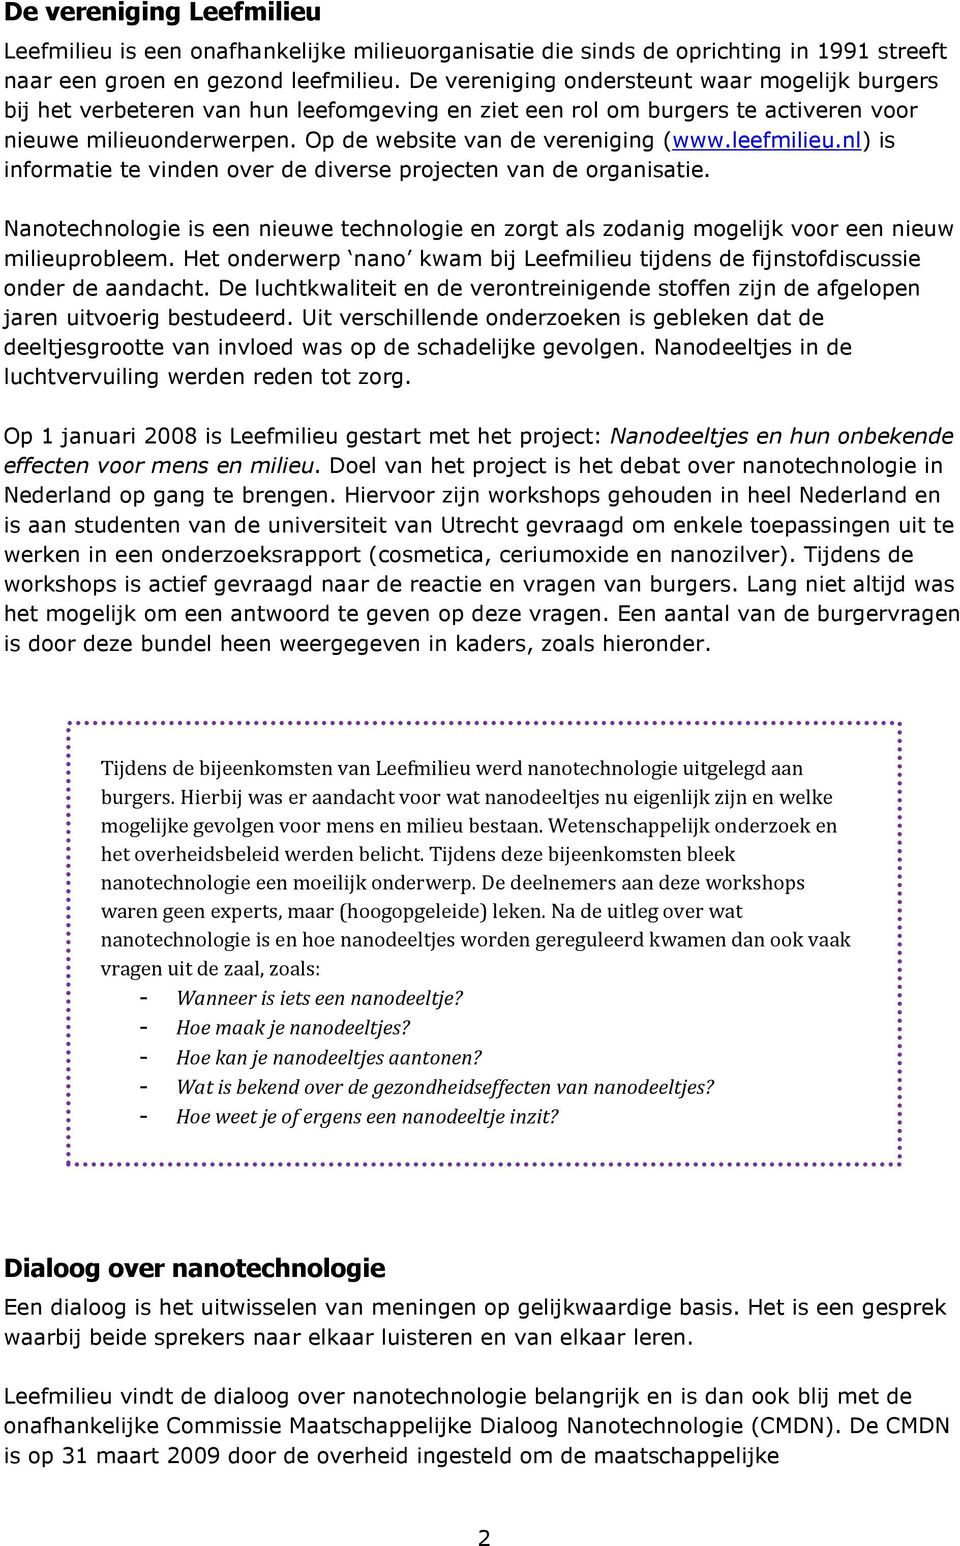 leefmilieu.nl) is informatie te vinden over de diverse projecten van de organisatie. Nanotechnologie is een nieuwe technologie en zorgt als zodanig mogelijk voor een nieuw milieuprobleem.